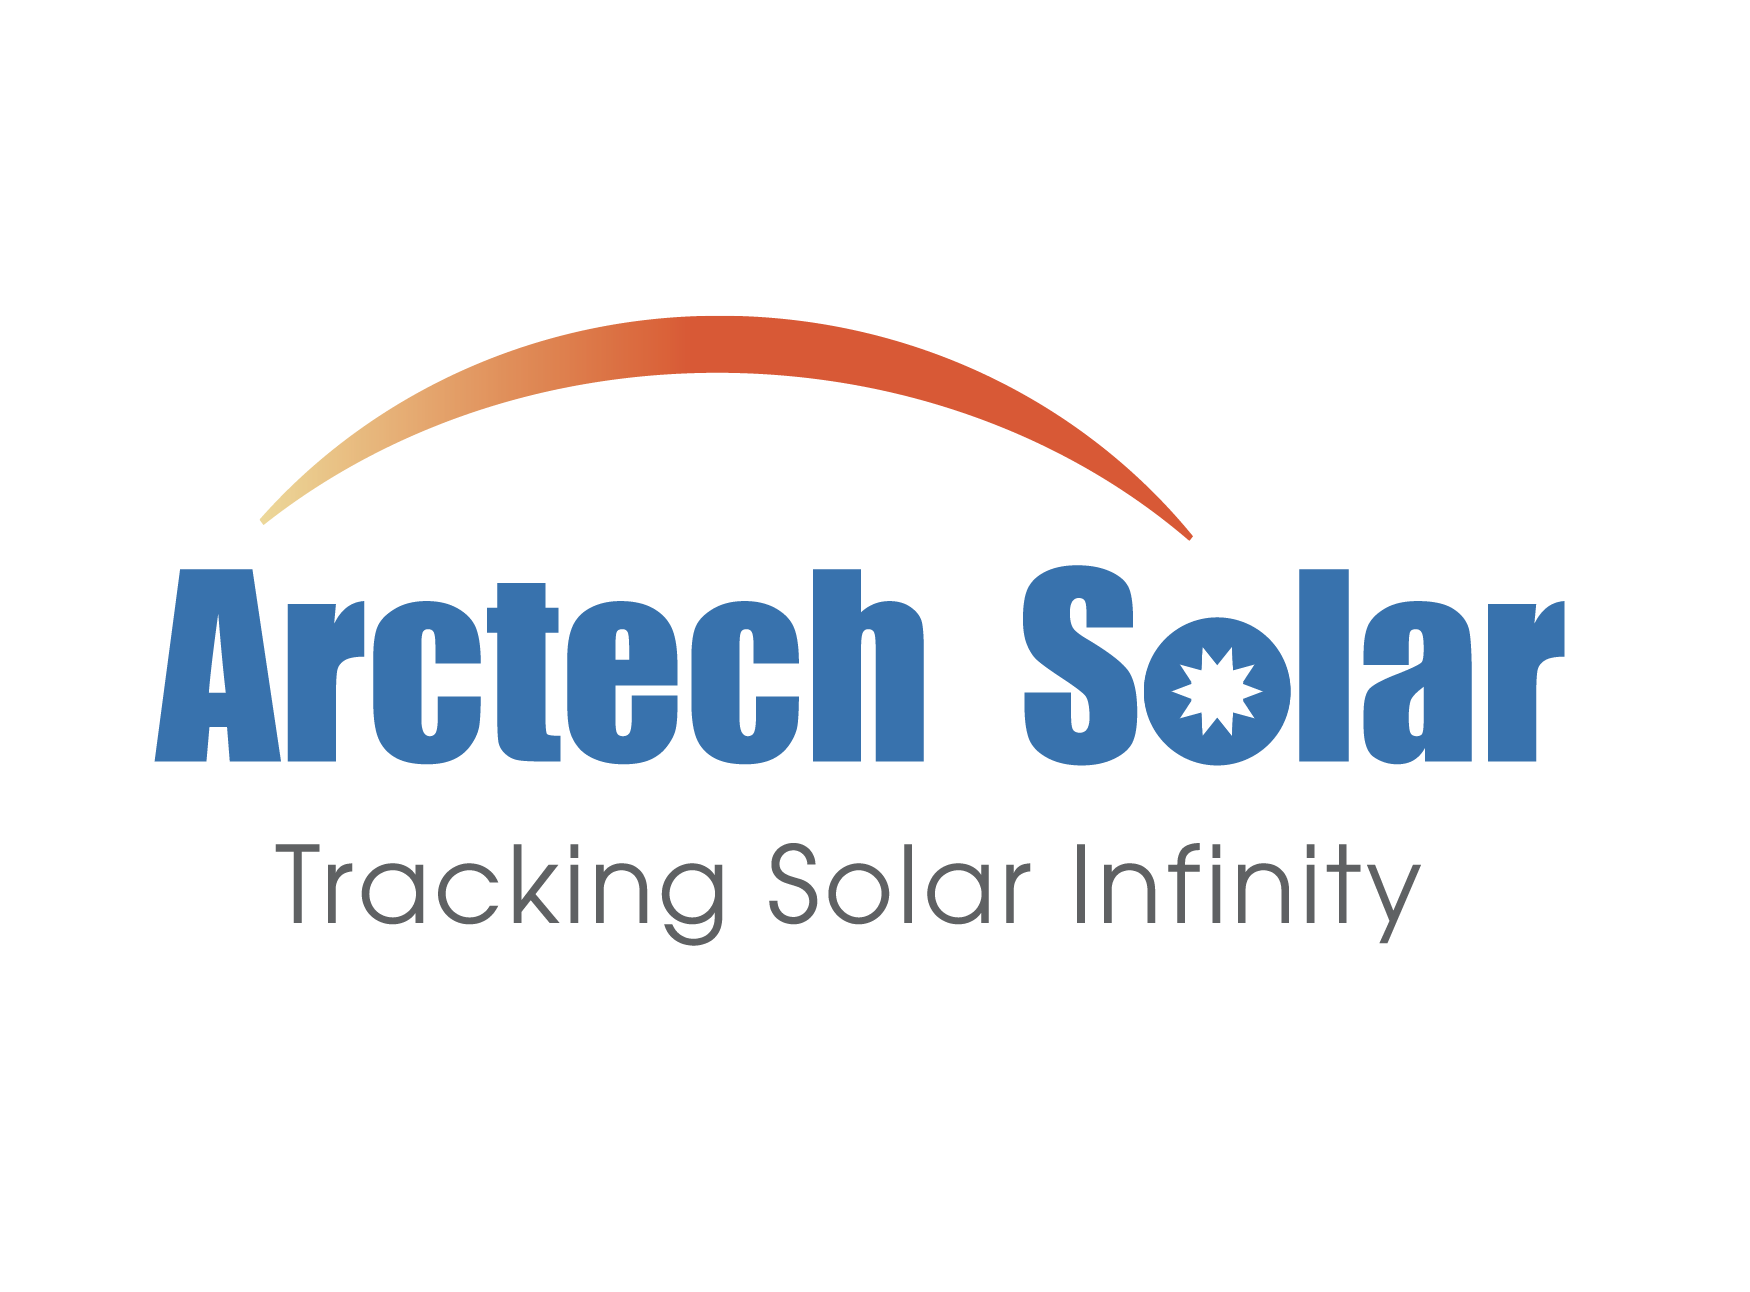 Arctech